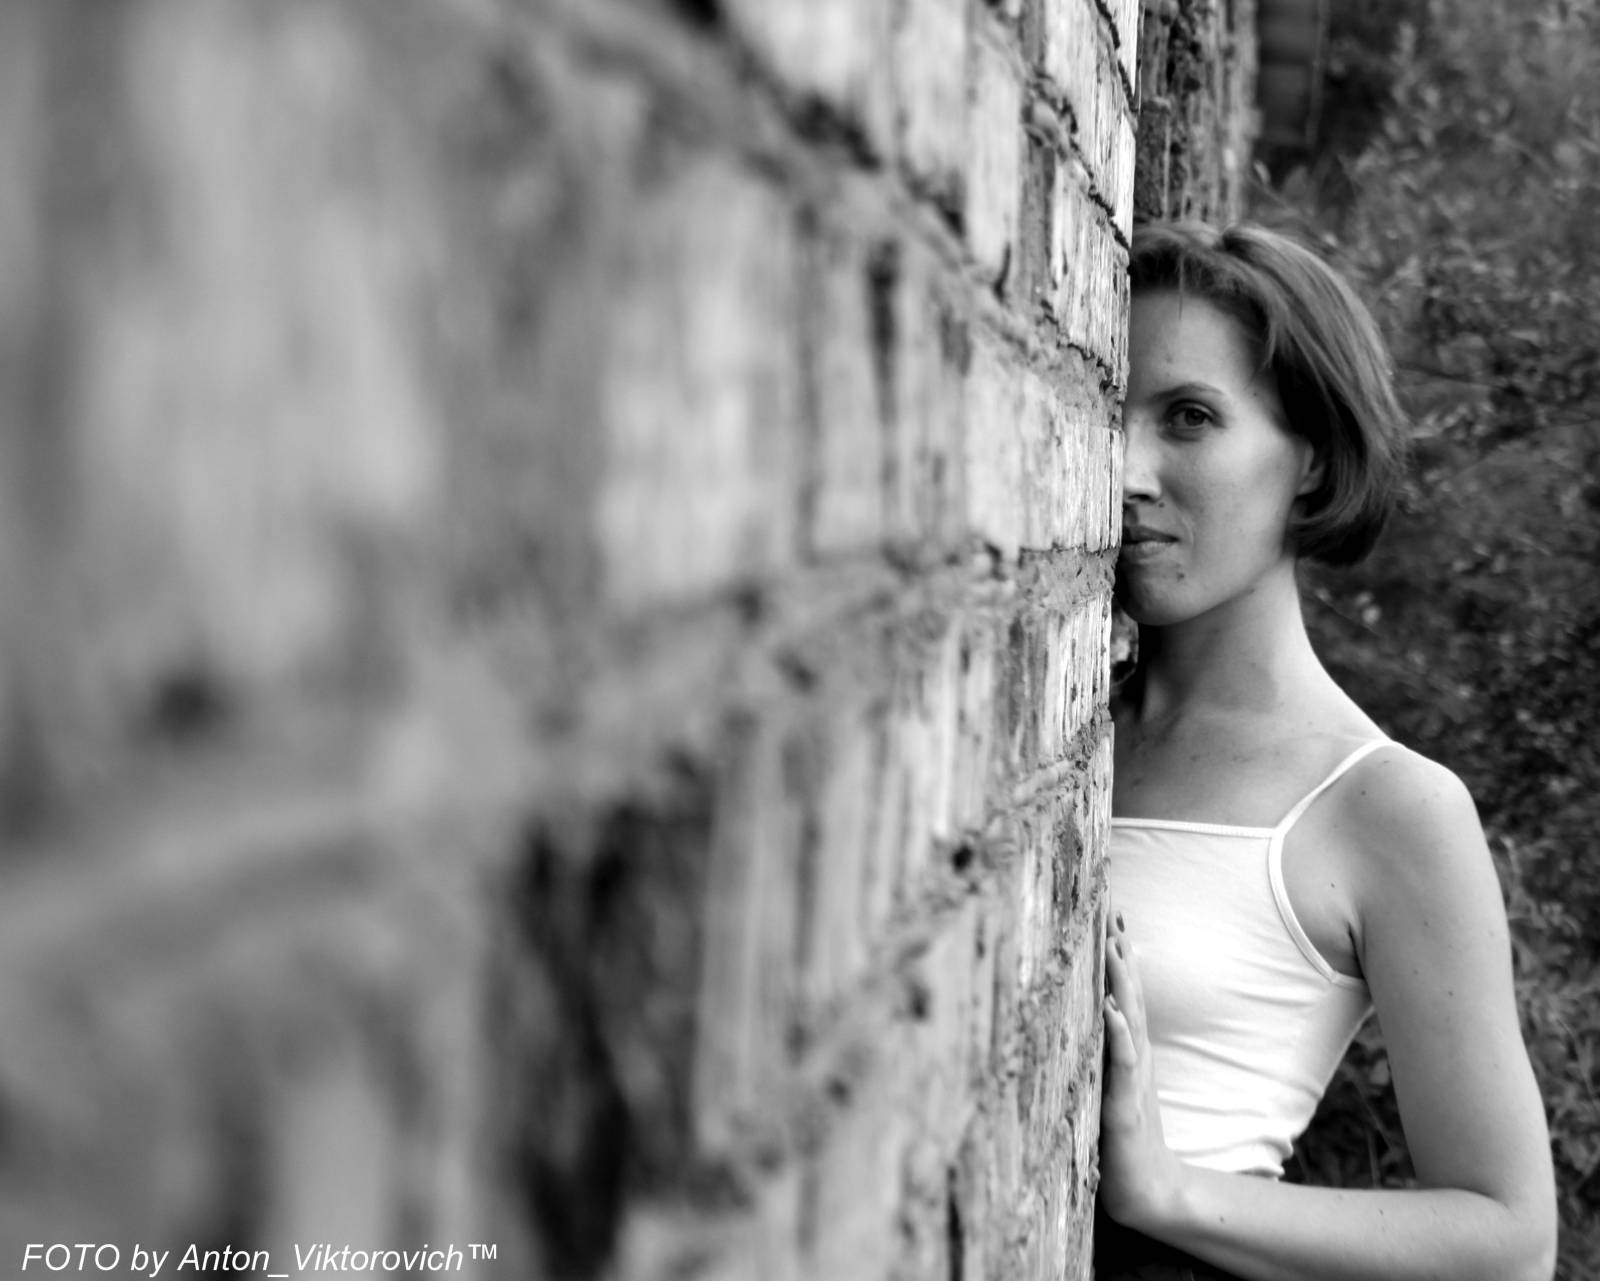 Молодая леди показывает стриптиз на фоне кирпичной стены - порно фото